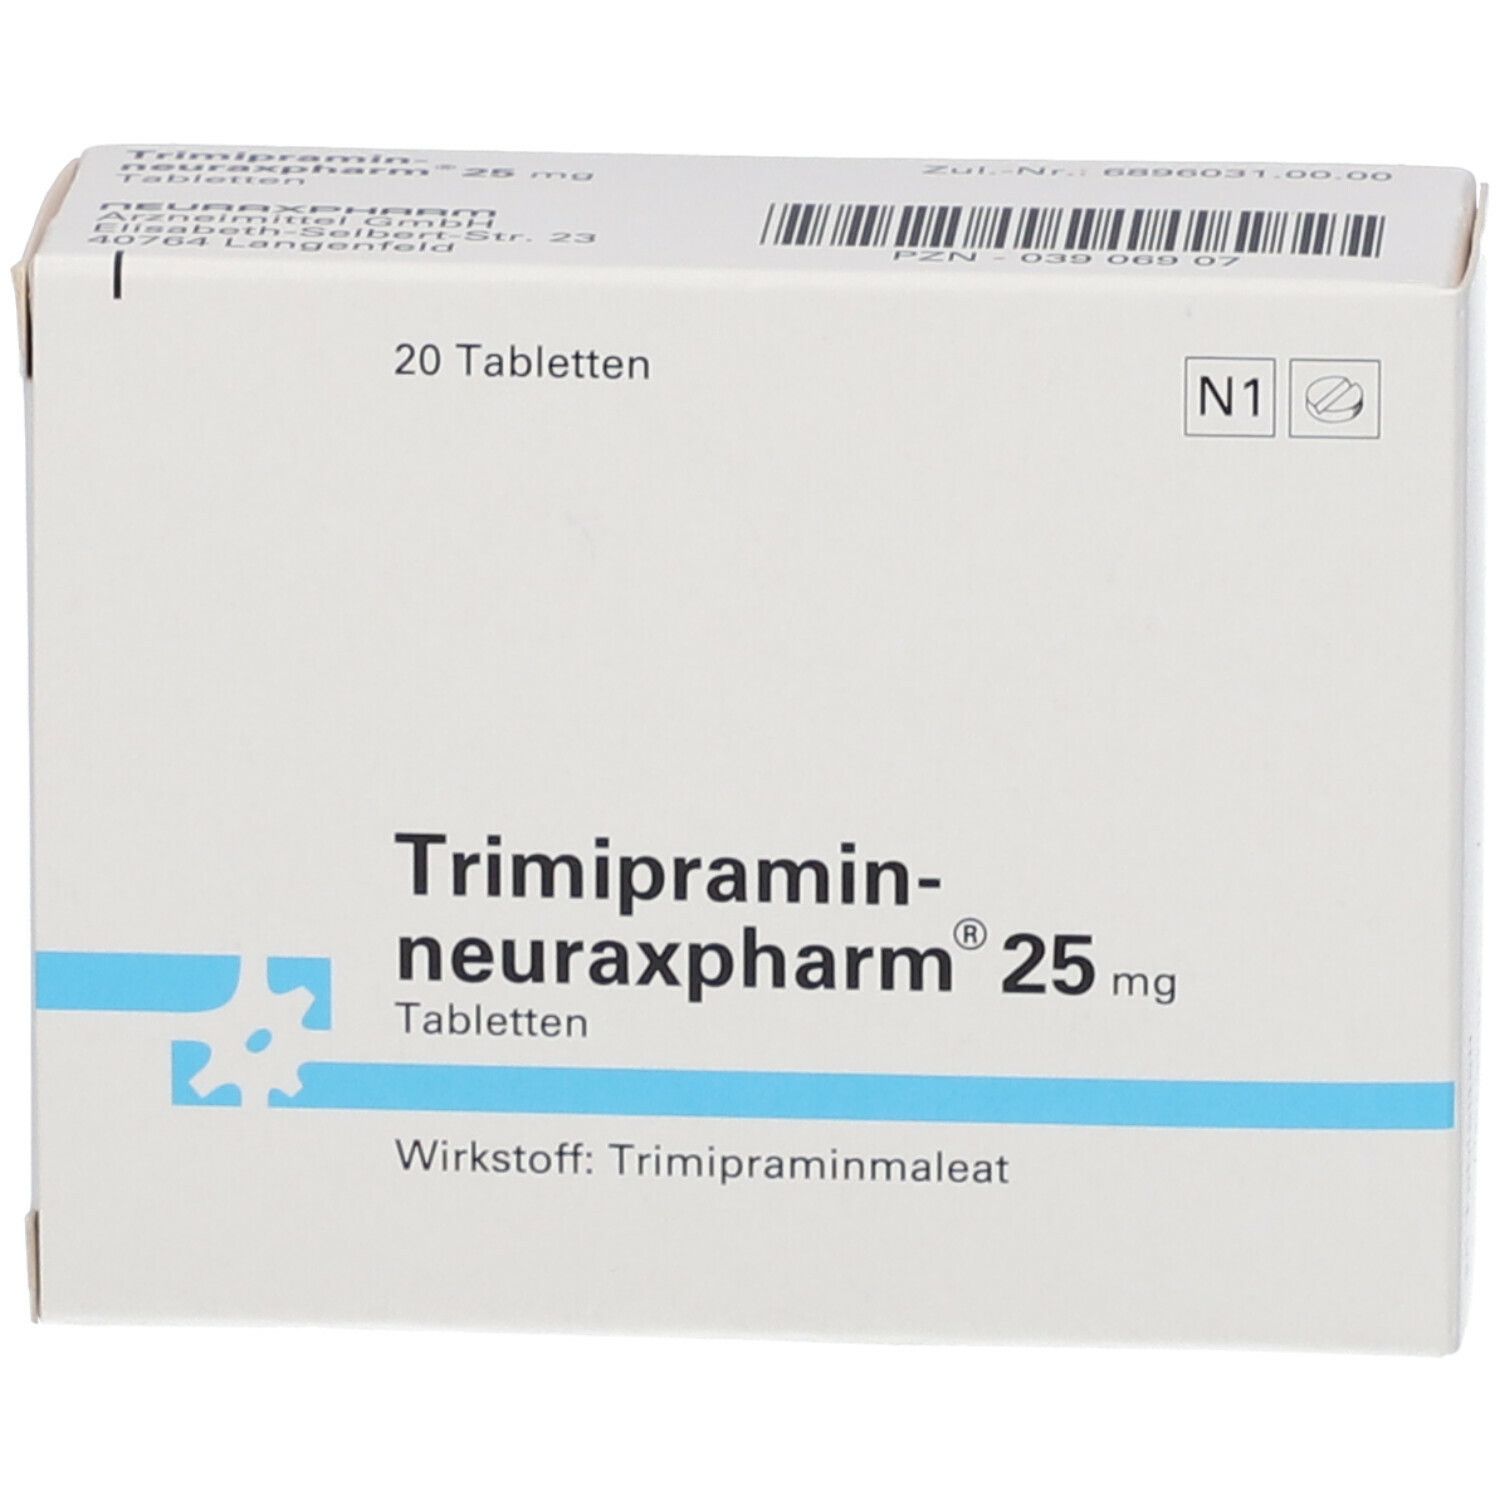 Trimipramin-neuraxpharm® 25 mg